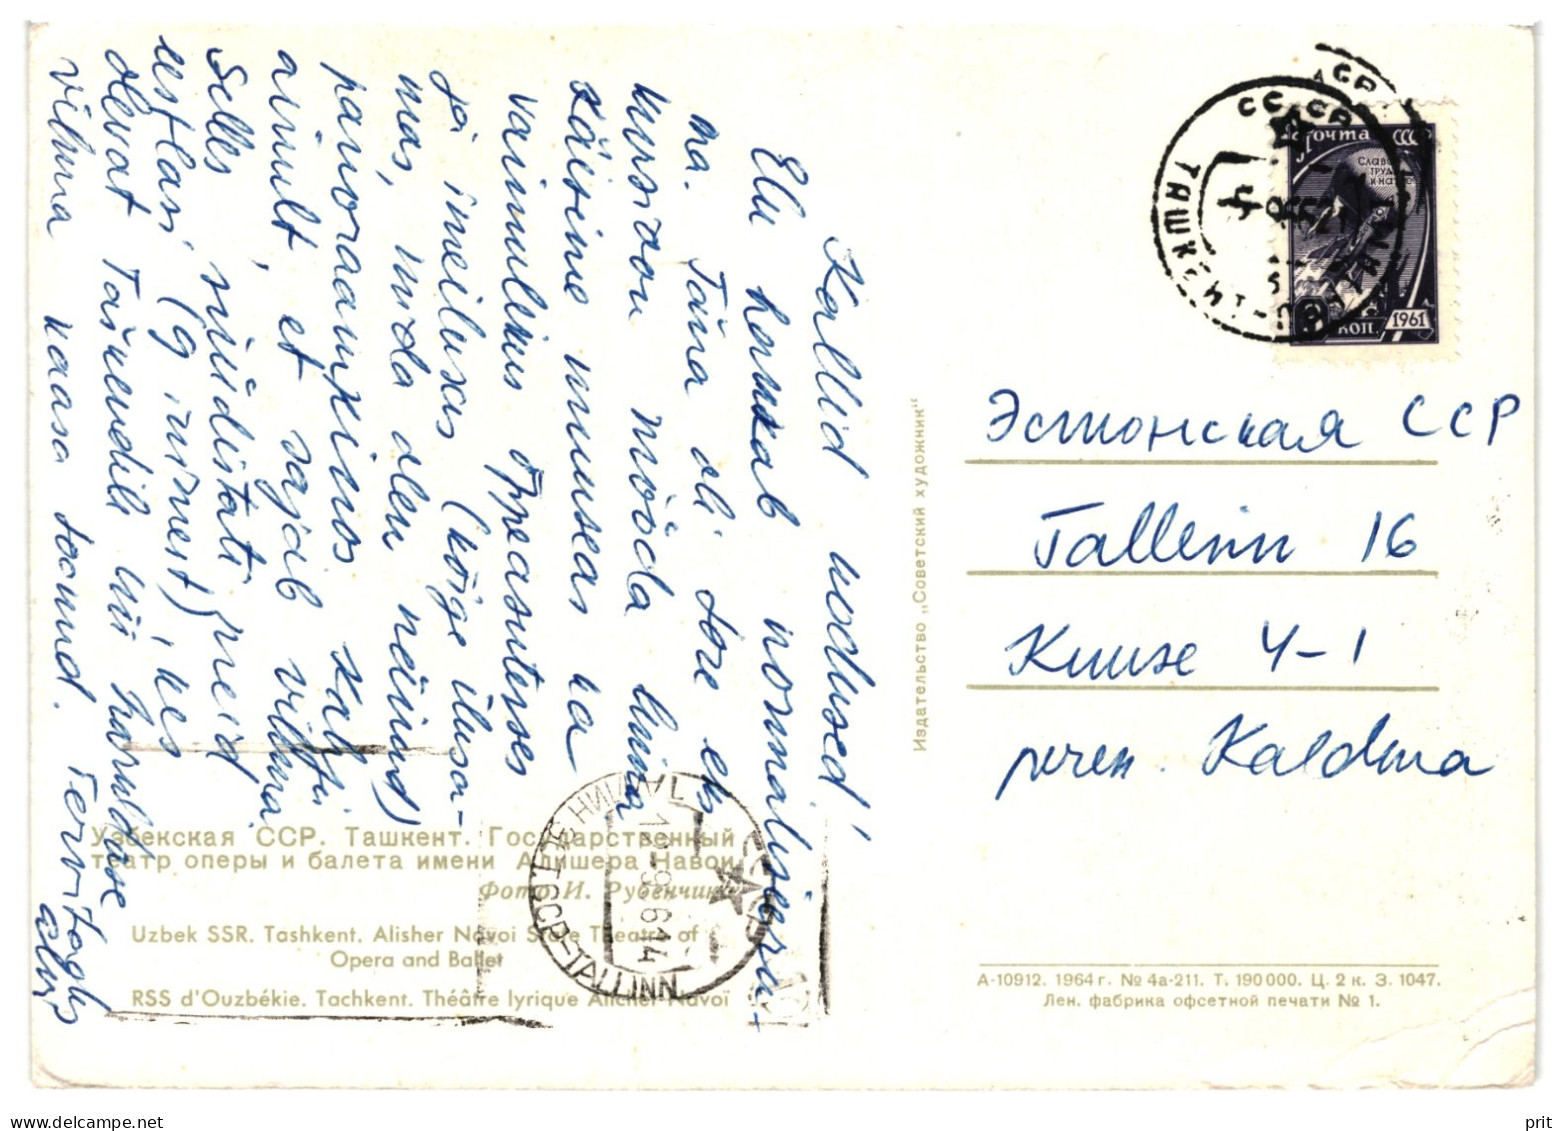 Tashkent Alisher Navoiy Opera Theater Soviet Uzbekistan USSR 1961 Used Postcard To Tallinn, Soviet Estonia - Uzbekistan